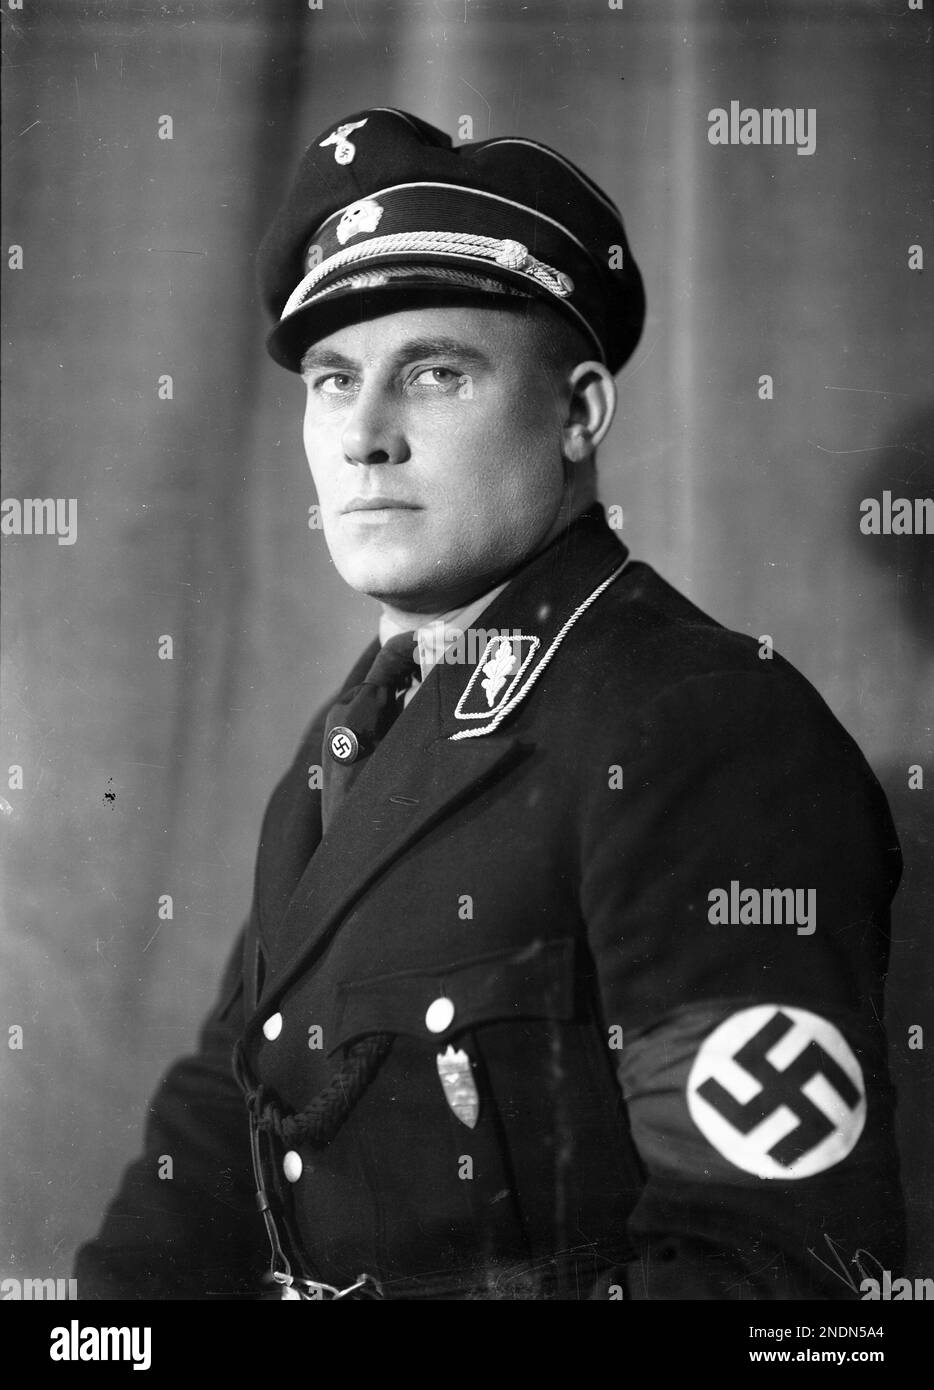 Ritratto membro del partito nazista Wilhelm Rediess più tardi SS e capo della polizia durante l'occupazione tedesca della Norvegia durante la seconda guerra mondiale. Foto Stock